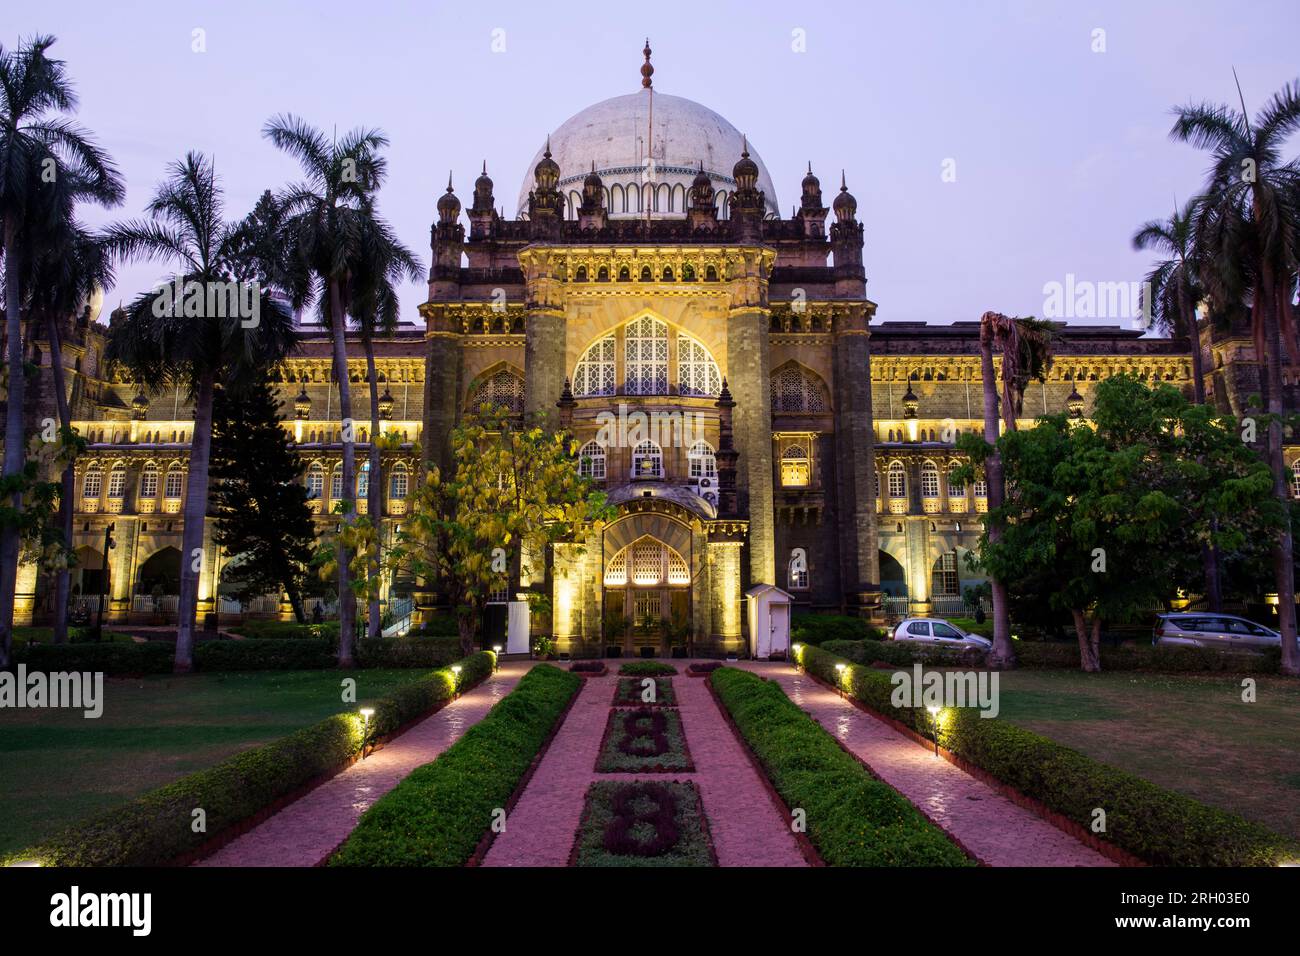 Mumbai, India 18 luglio 2017 - edificio illuminato di primo livello dell'Heriage Grade One del CSMVS Museum, precedentemente museo Prince of wales di Mumbai, India Foto Stock